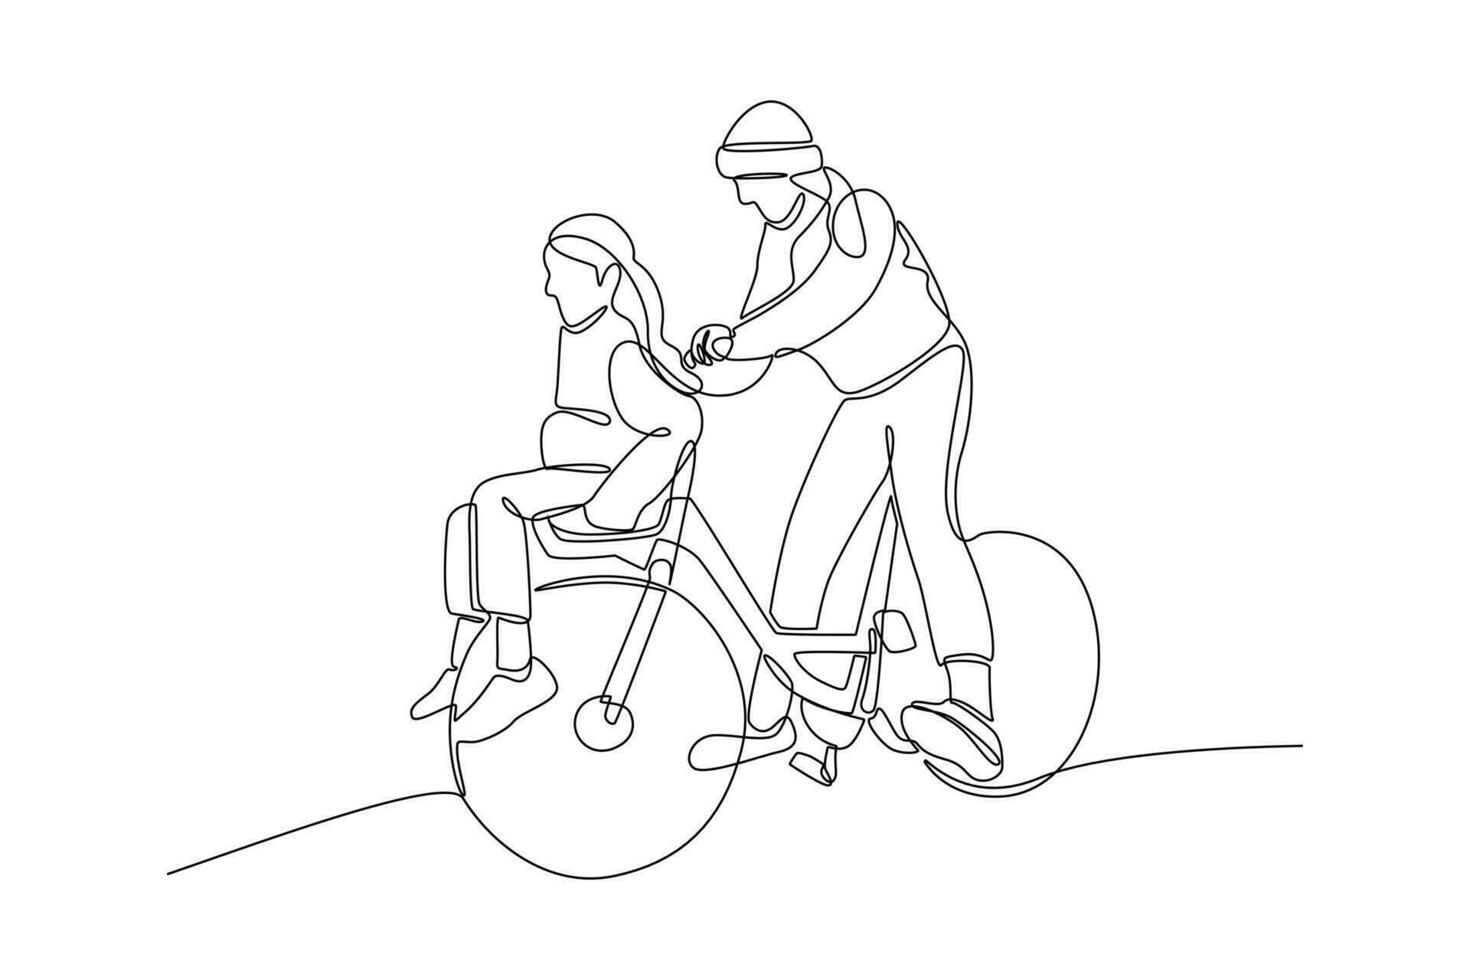 continu un ligne dessin content Parents avec sa enfant équitation bicyclette ensemble. vecteur illustration.